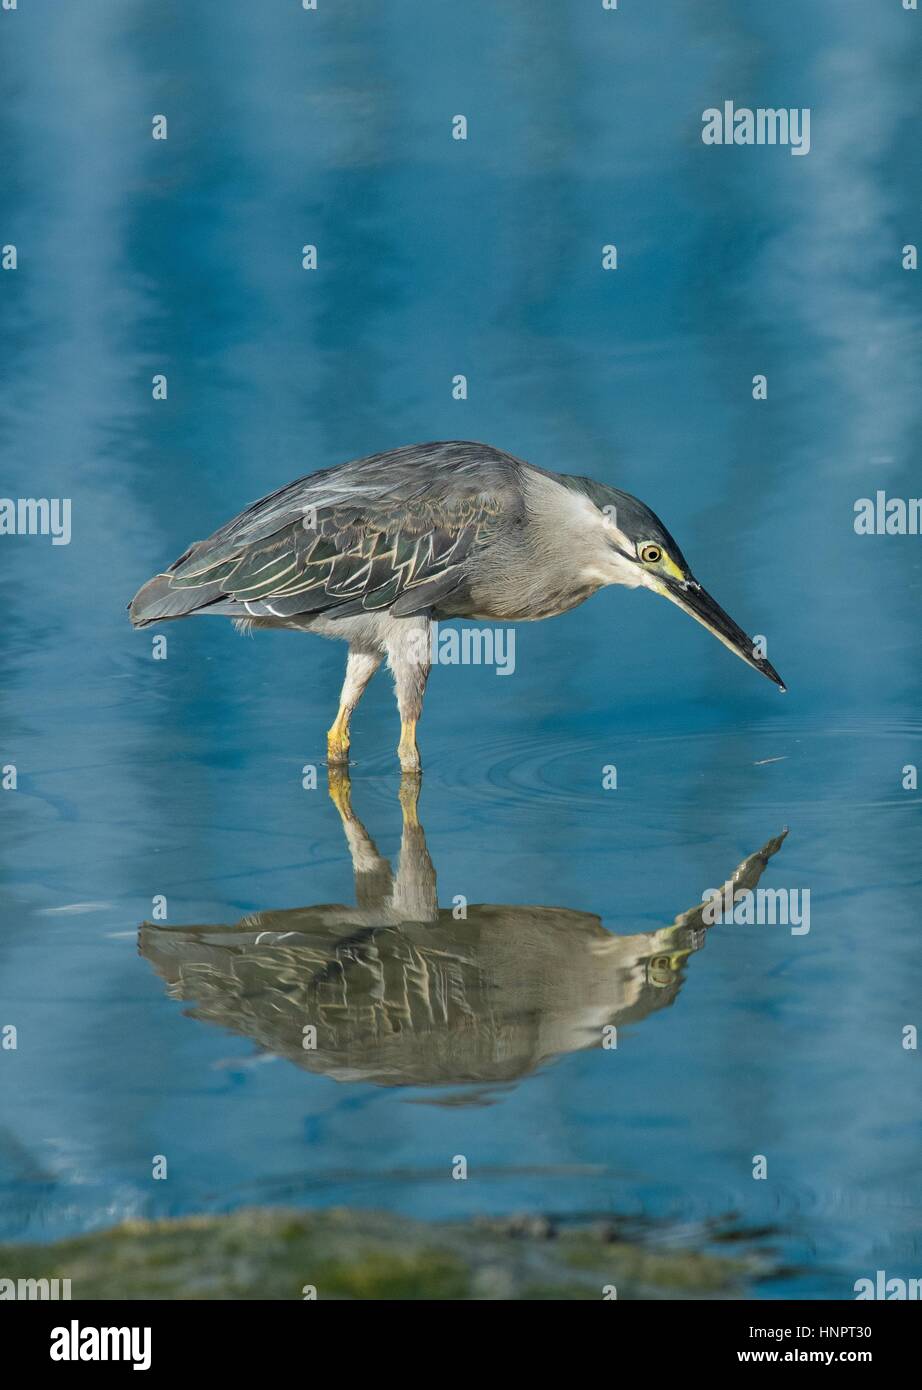 Porträt Reflexion des kleinen Heron - Butorides Striata - stehen im flachen Wasser mit Reflektionen und abstrakten Mustern himmelblauen blau-und Grüntöne. Stockfoto